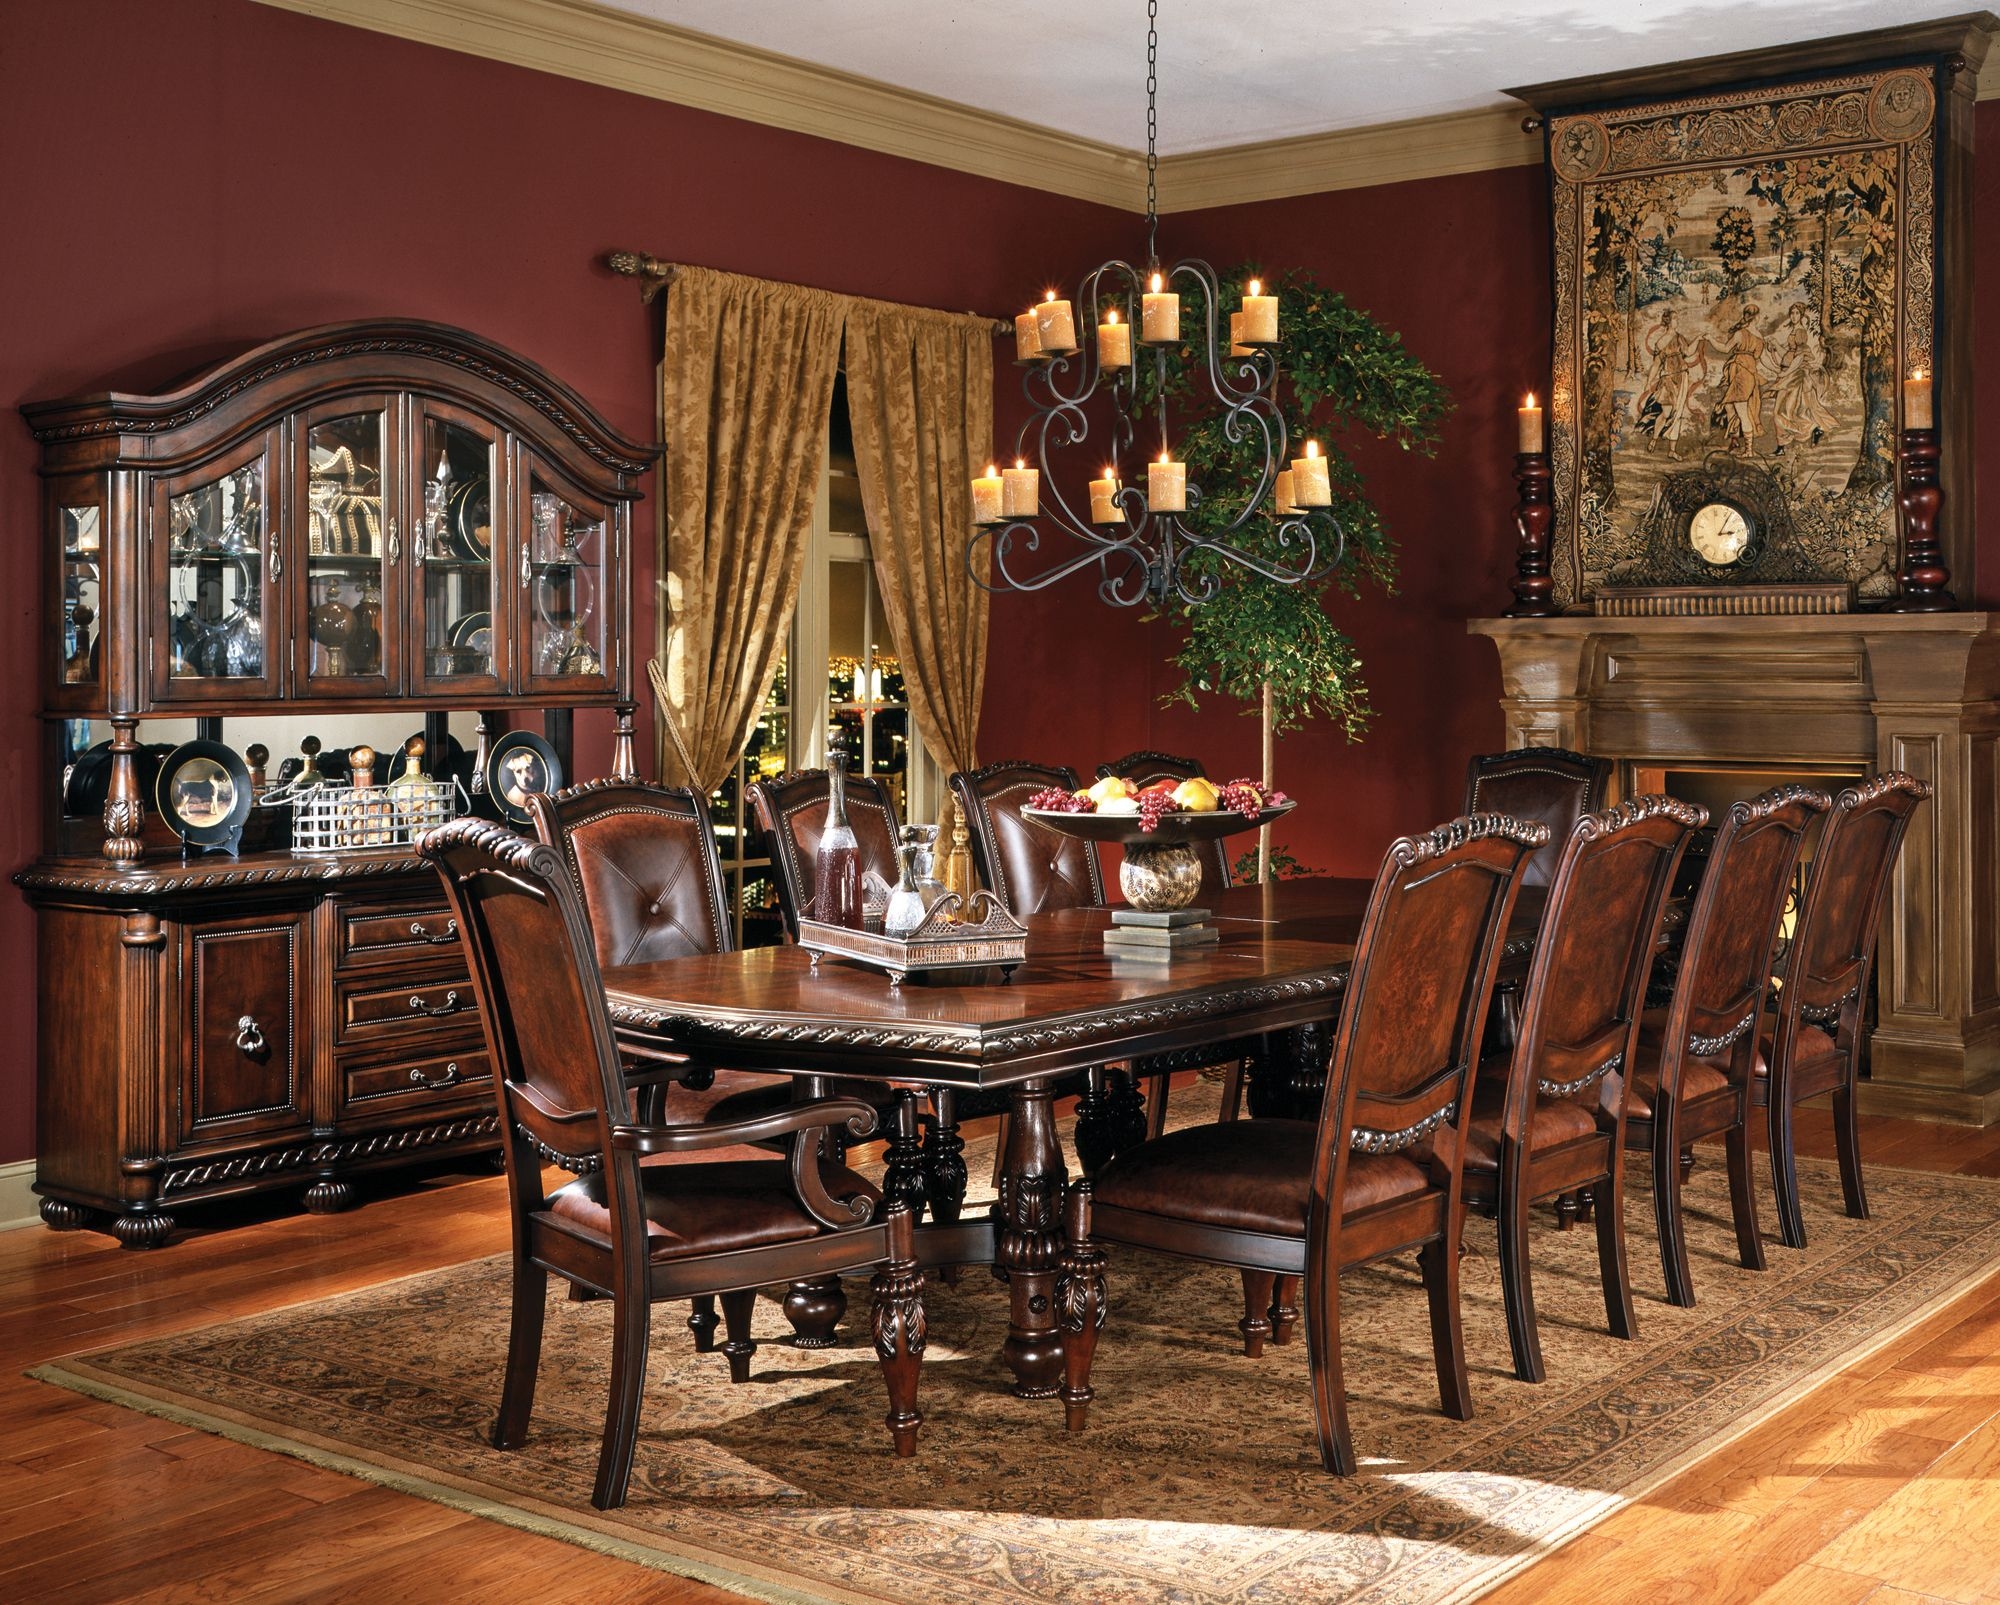 Elegant Dining Room Furniture For Formal Gatherings